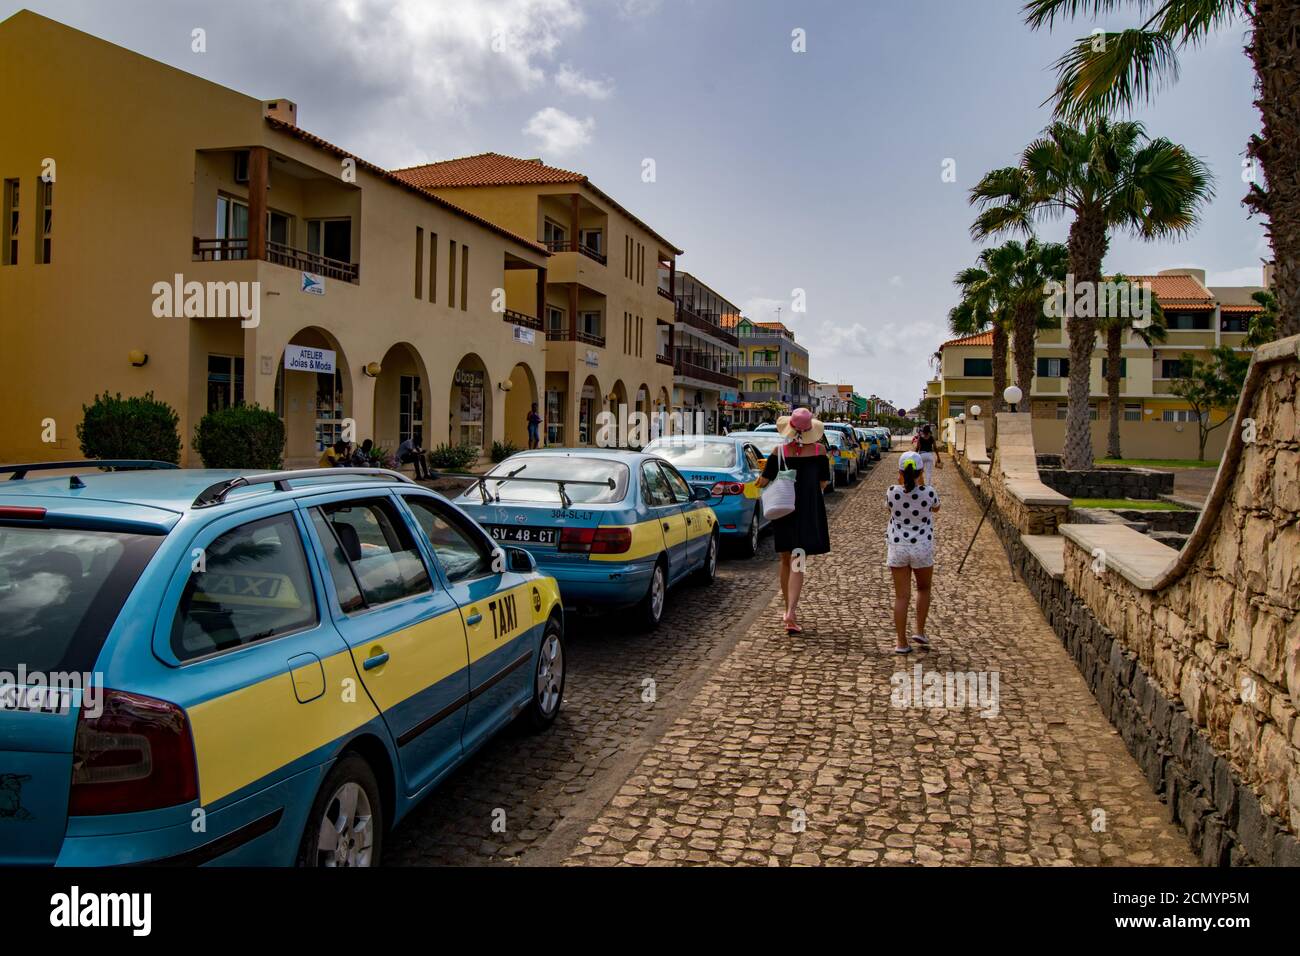 Taxi Cab colori blu e giallo in Cabo Verde isola di sale, ilha do SAL, madre singola, madre e figlia che passa o cammina sul lato della passeggiata Foto Stock